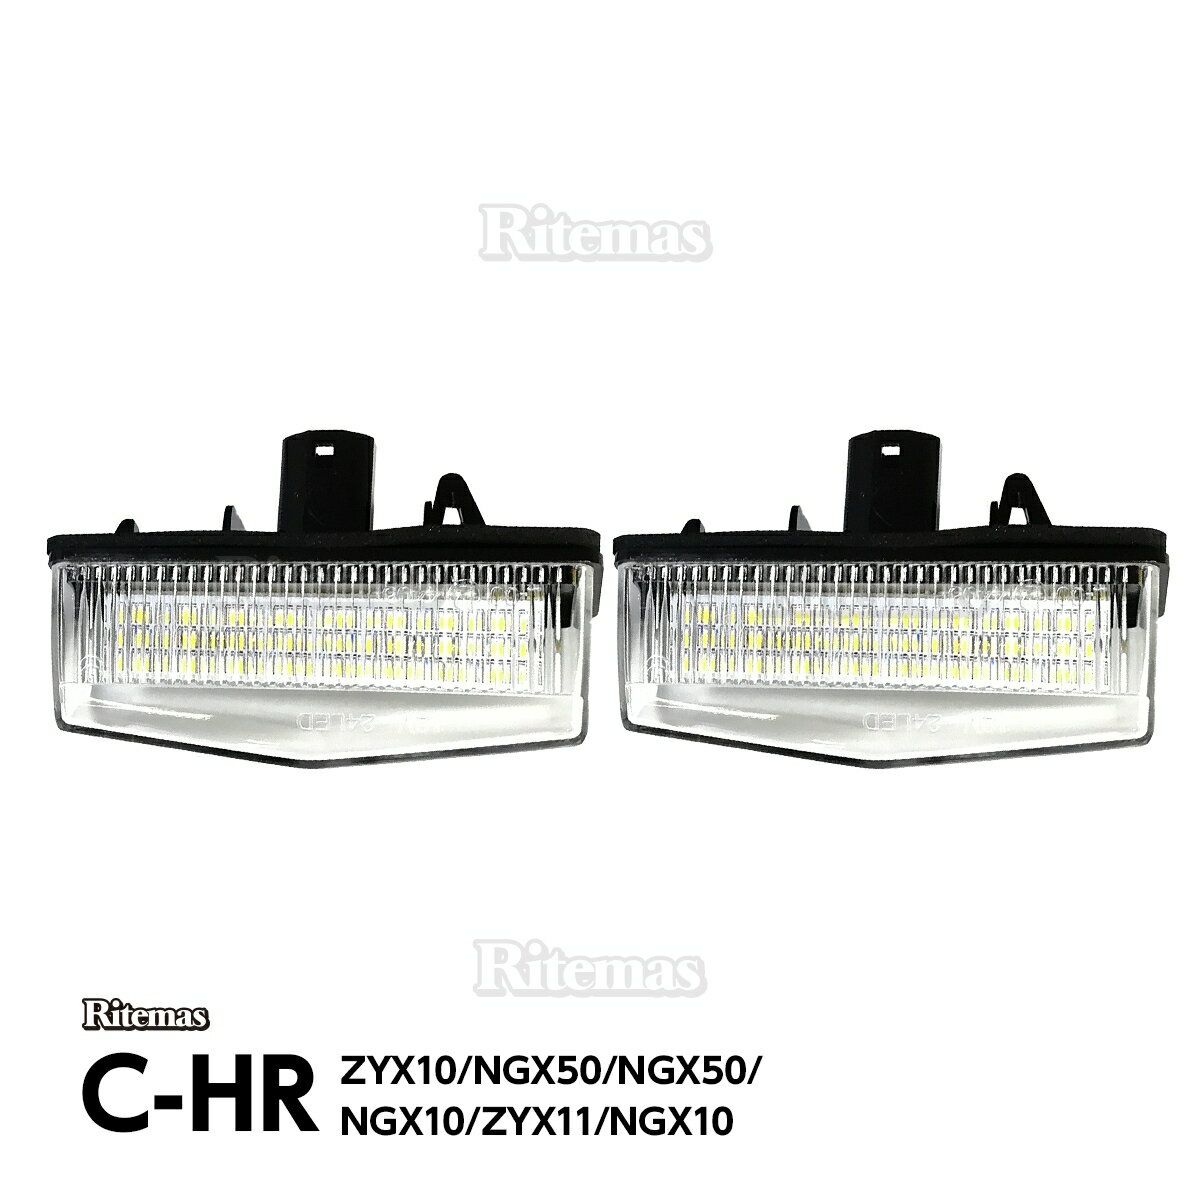 C-HR CHR LED ライセンスランプ 前期 後期 ZYX10/NGX50/NGX50/NGX10/ZYX11/NGX10 ナンバー灯ユニット 純正交換タイプ LED 左右セット クールホワイト 白 ホワイト ポン付け 簡単取り付け LEDナンバー灯